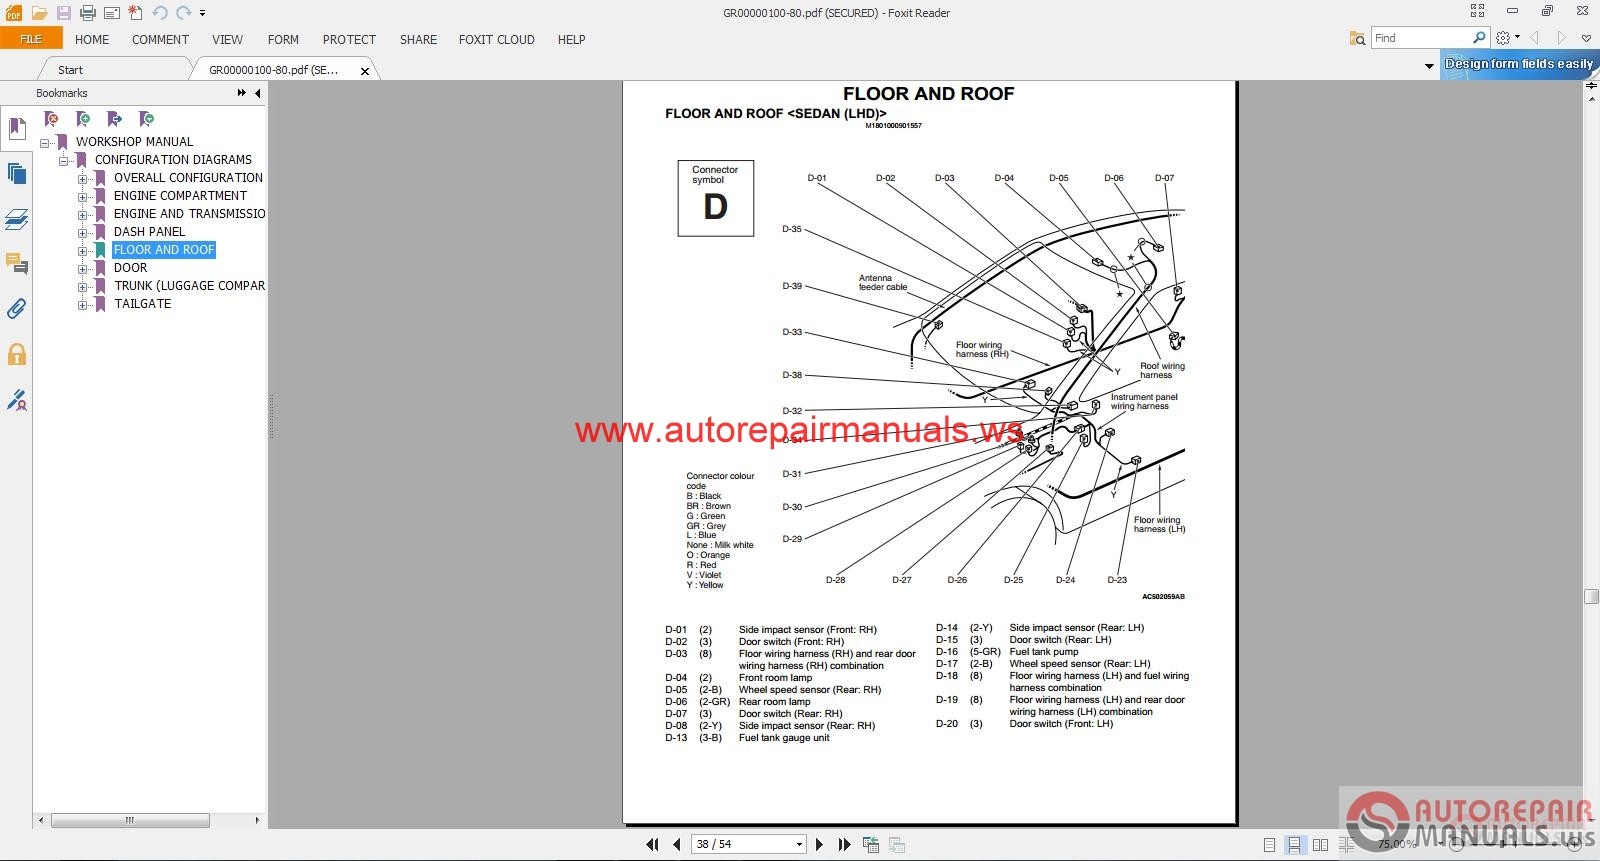 2010 Mitsubishi Lancer Owners Manual Pdf Download